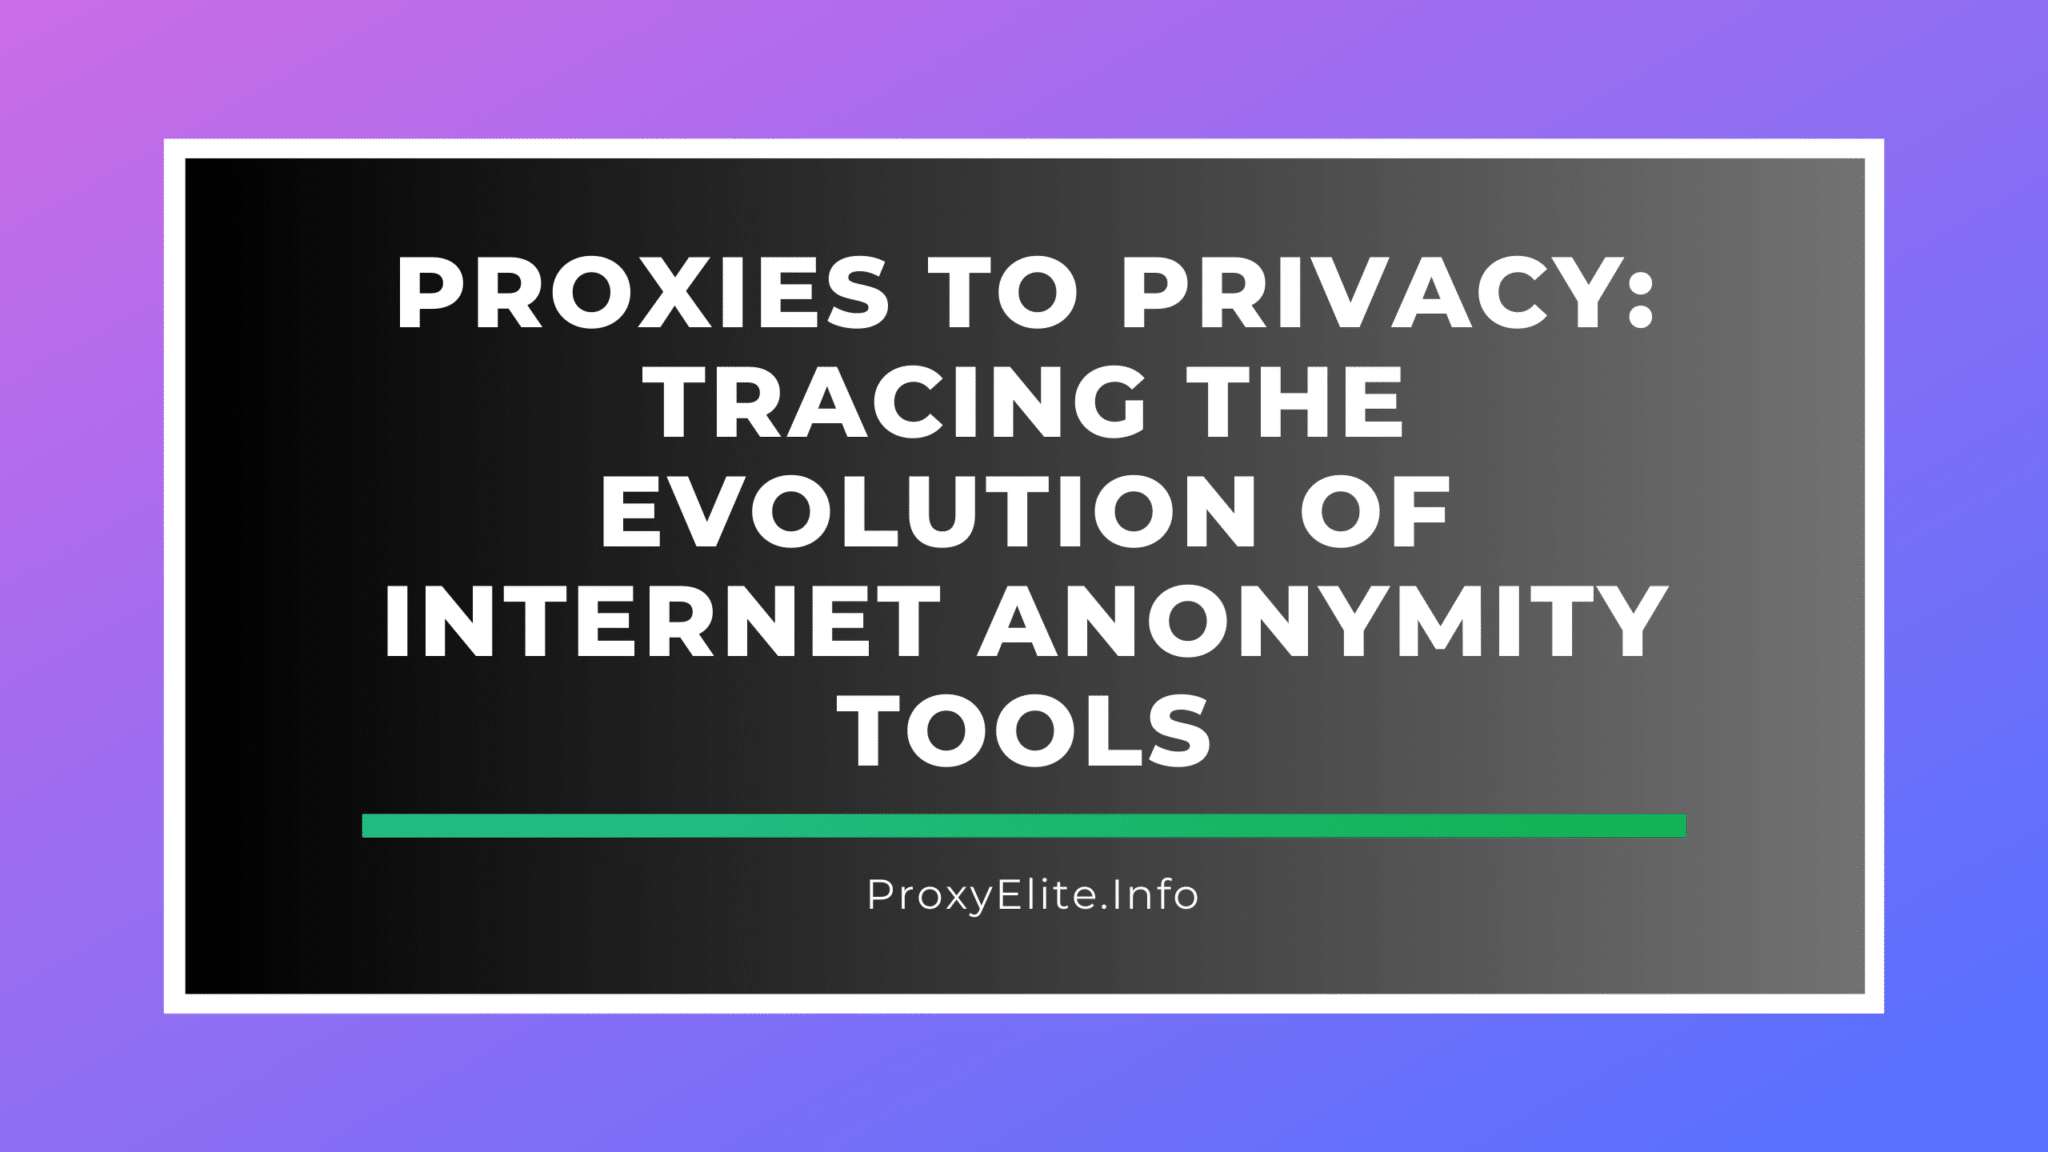 Proxy bảo mật: Truy tìm sự phát triển của các công cụ ẩn danh trên Internet